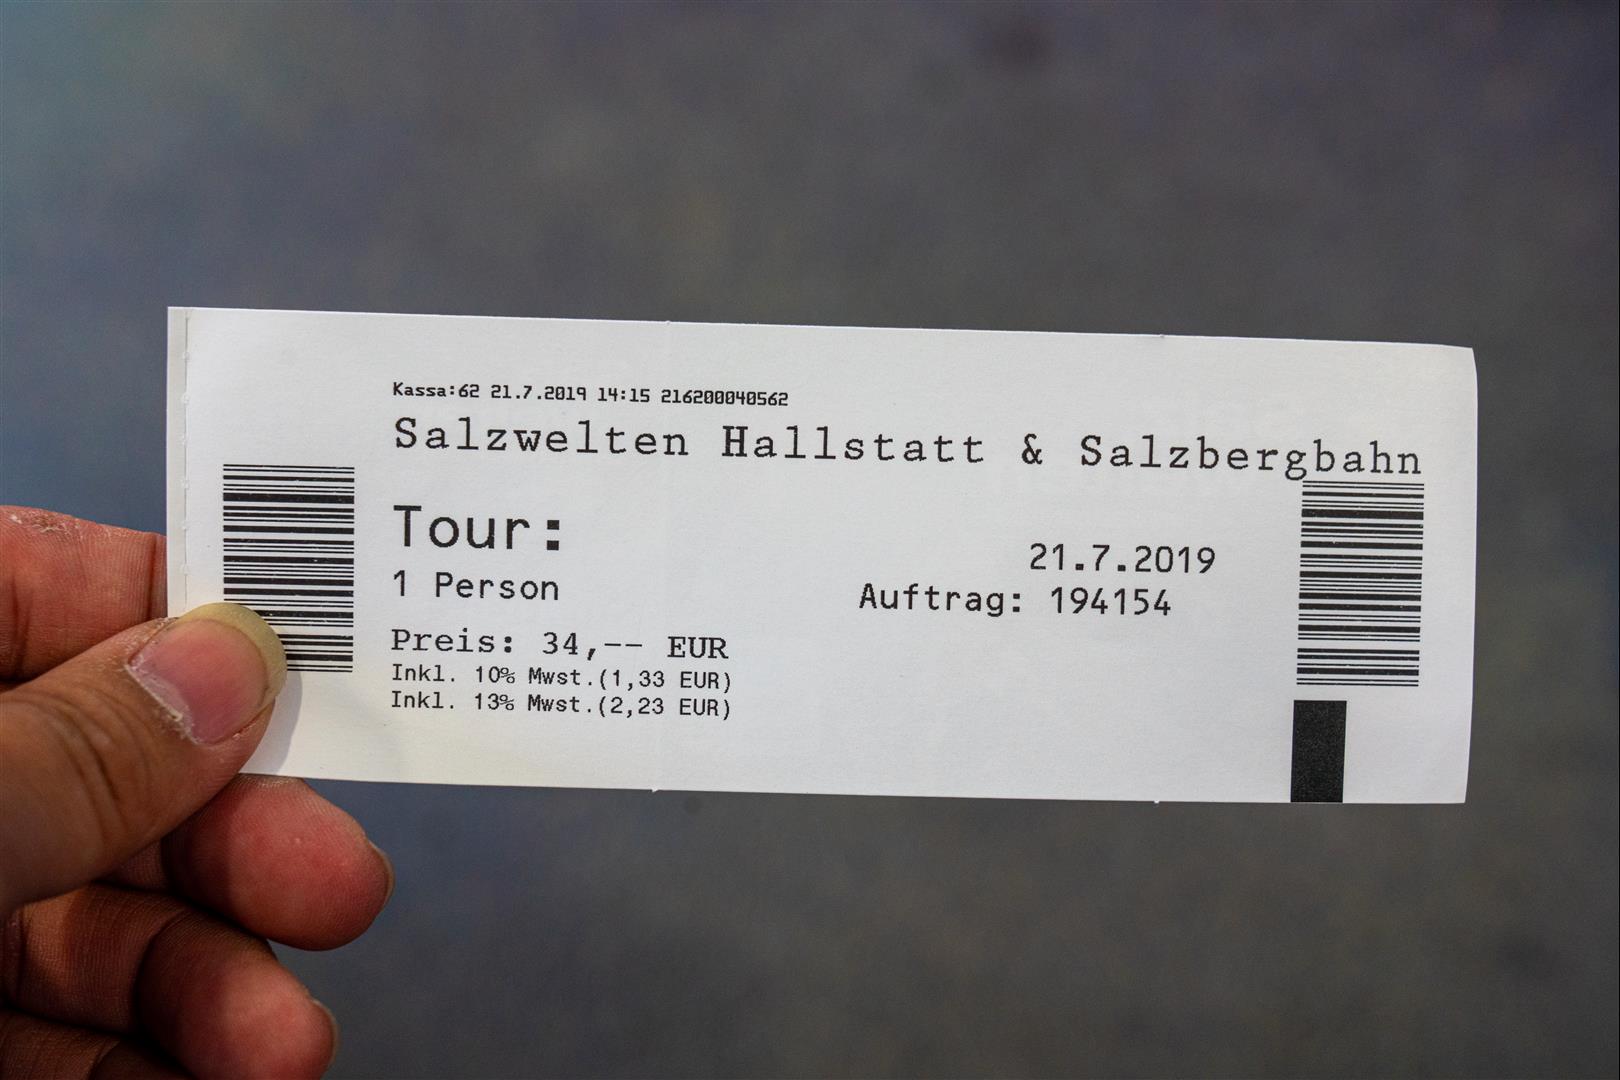 [奧地利/哈斯塔特] 哈斯塔特鹽礦 - Hallstatt 最值得一來體驗 - 位置、票價、照片整理